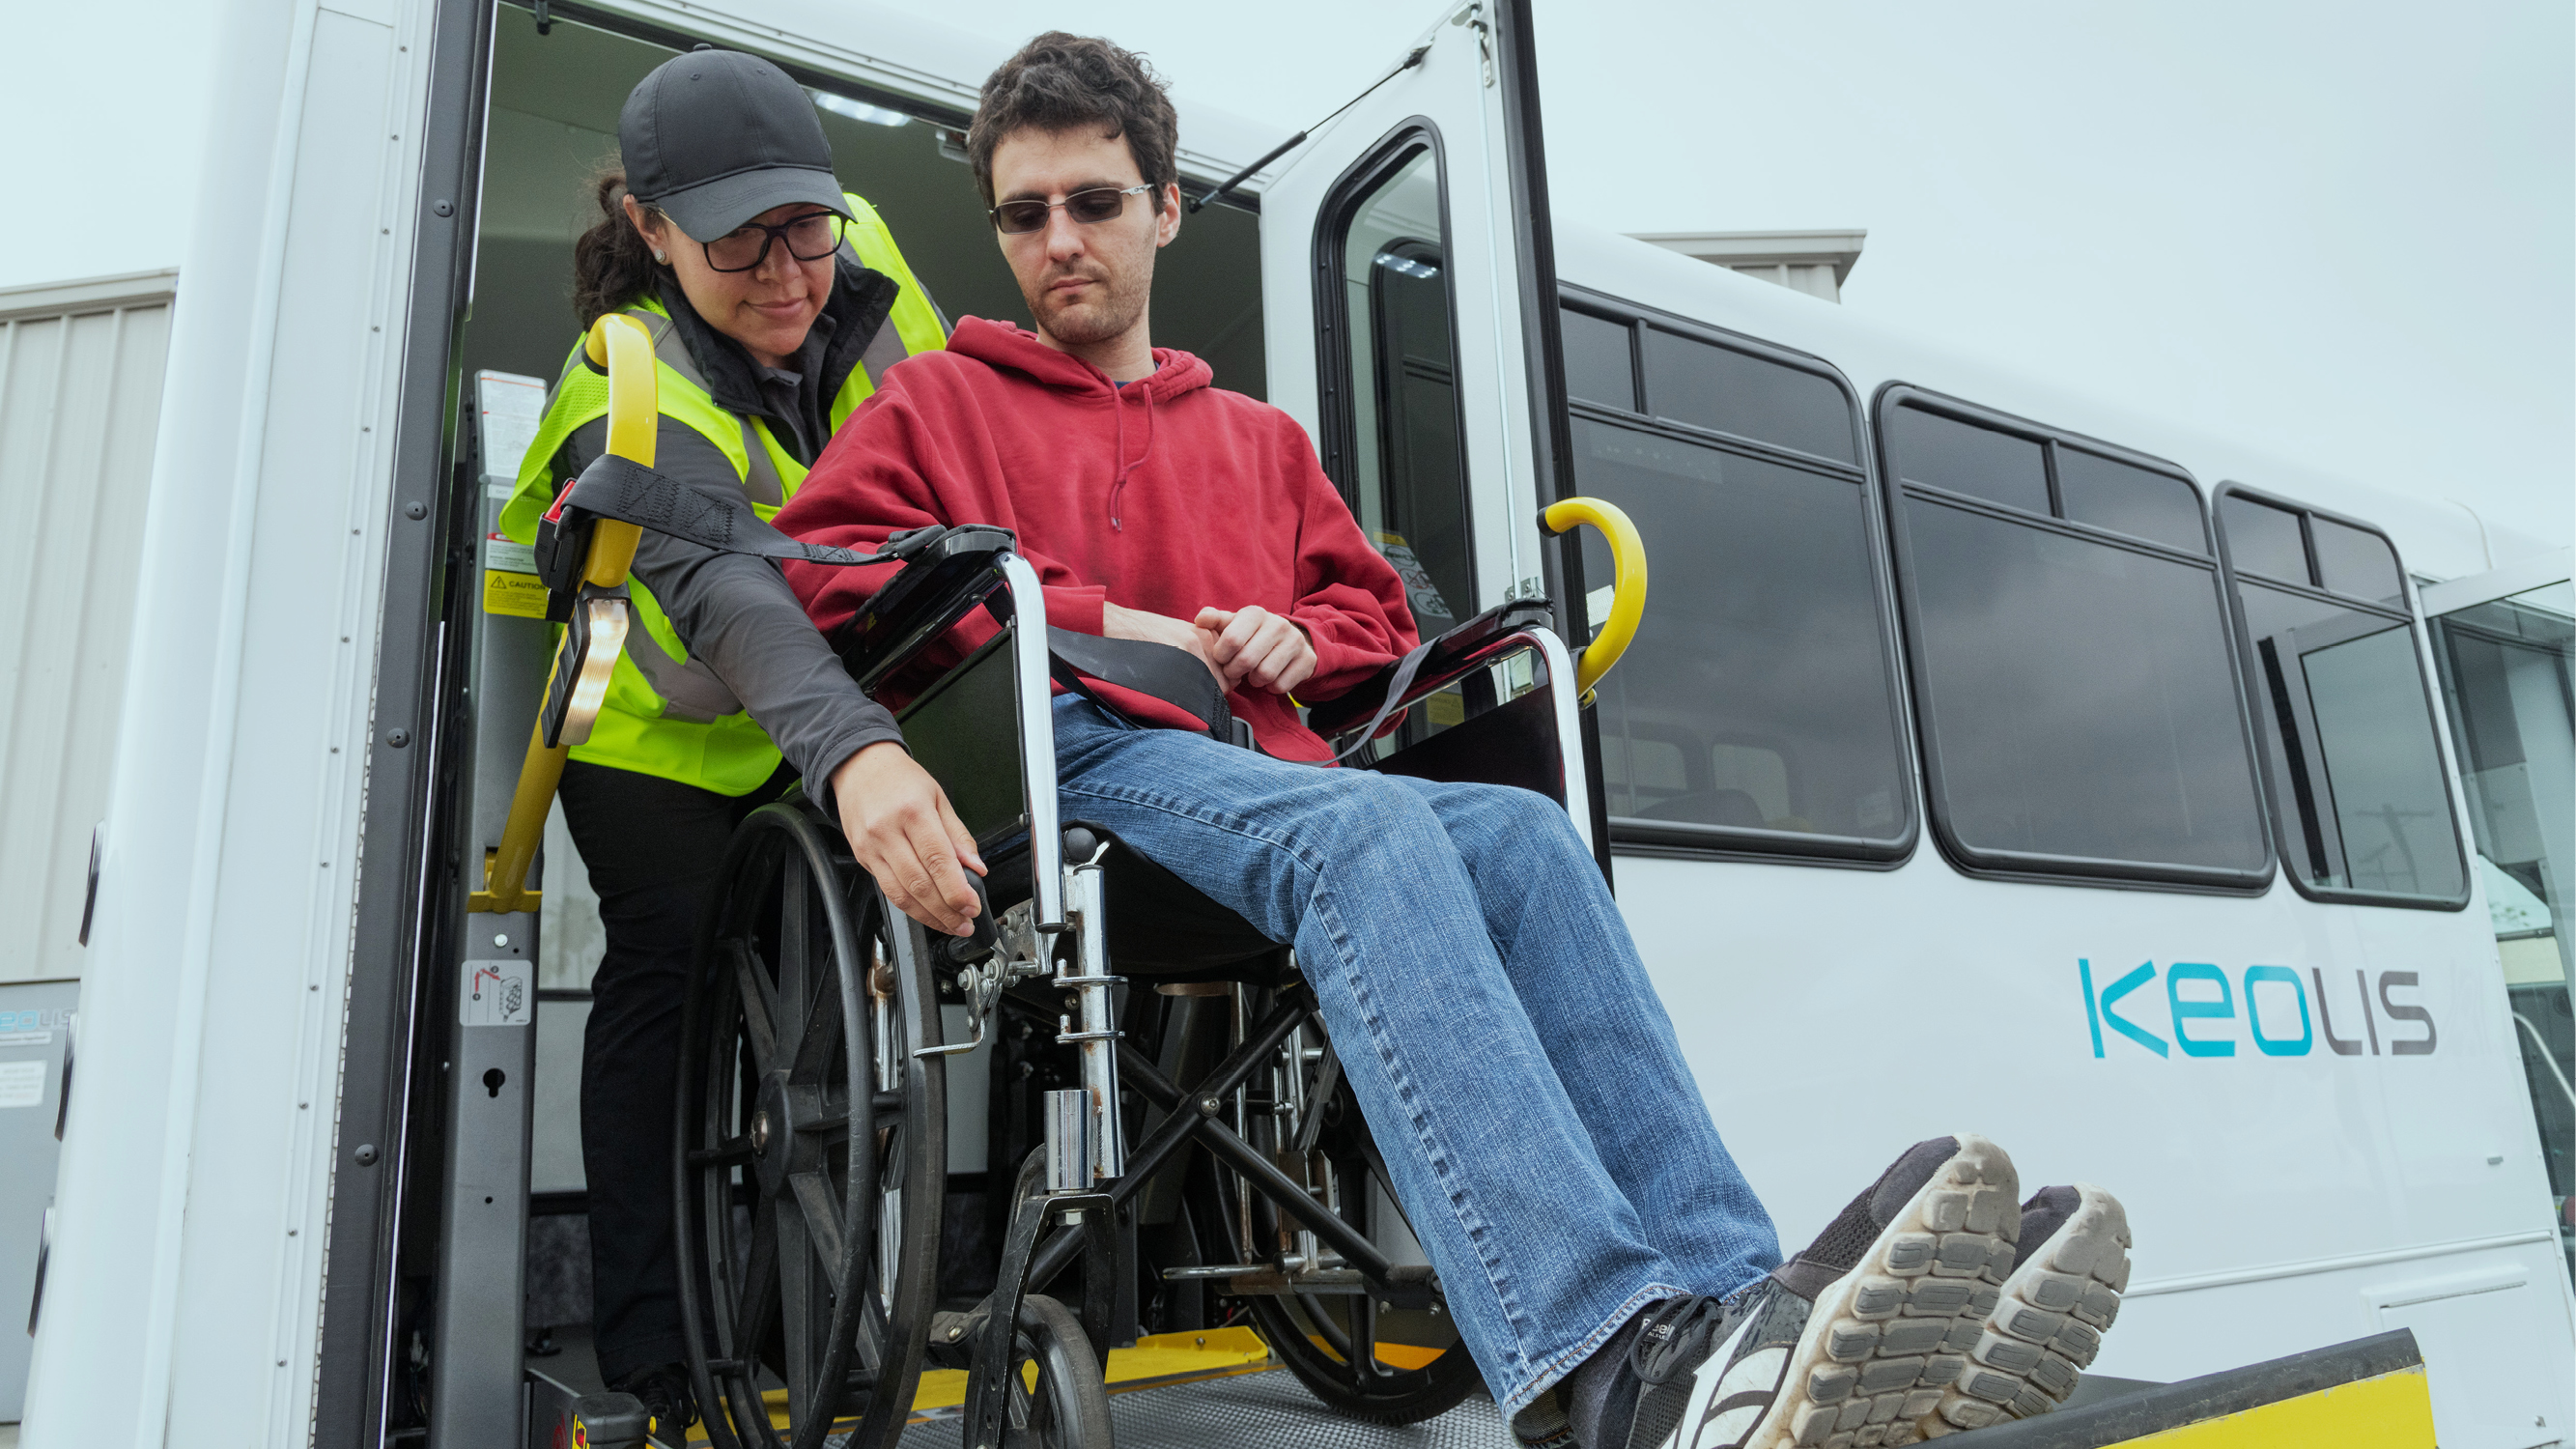 le personnel aide une personne à mobilité réduite